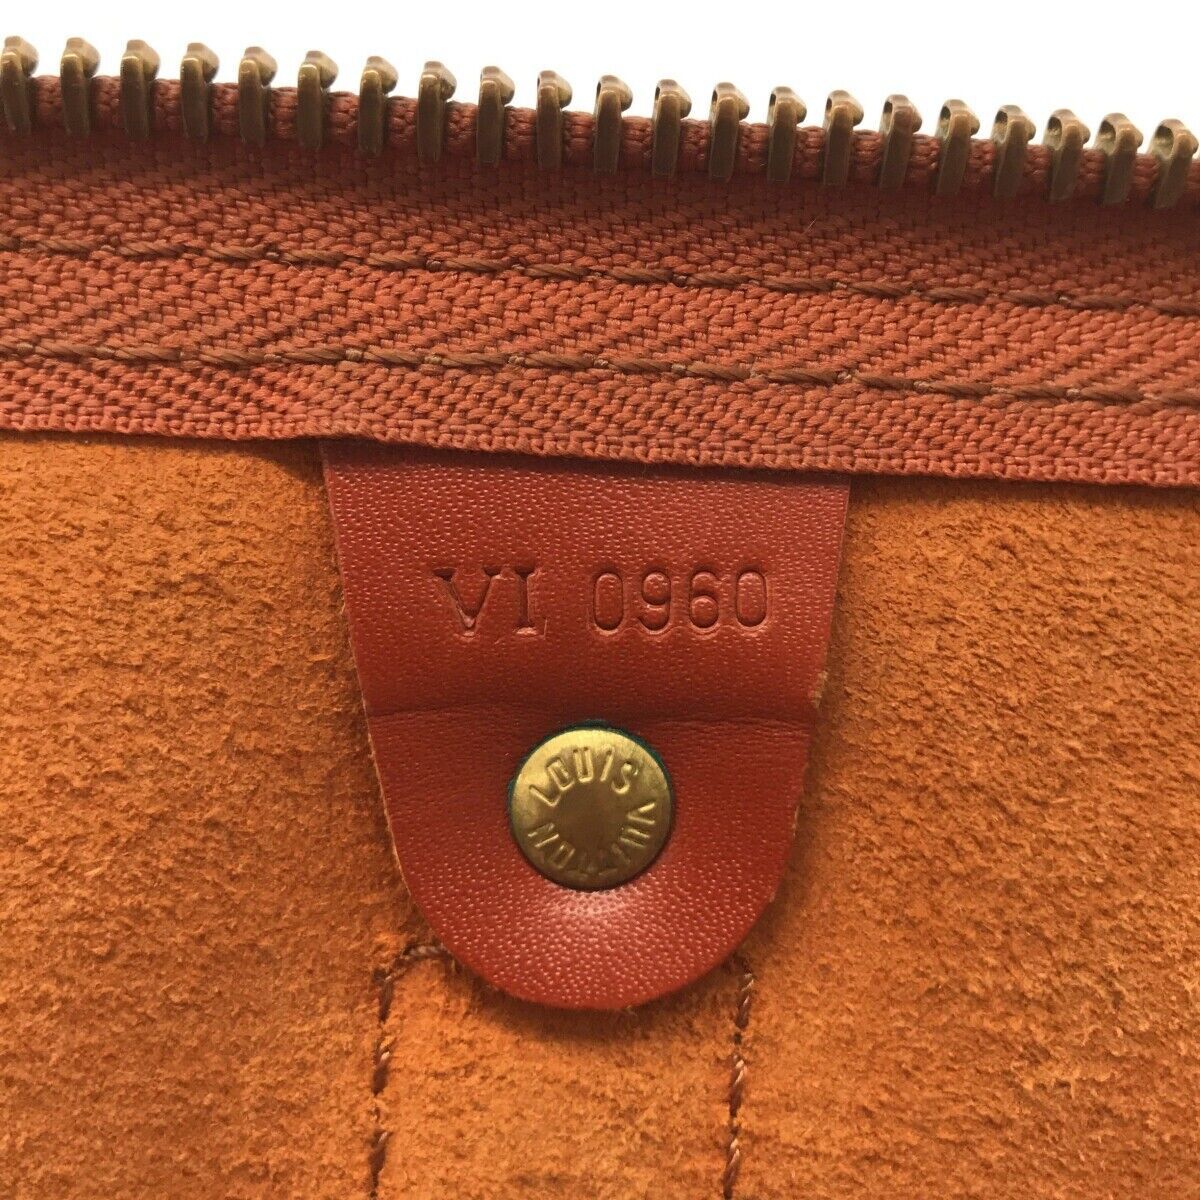 Louis Vuitton Vintage - Epi Keepall 50 - Red - Epi Leather Travel